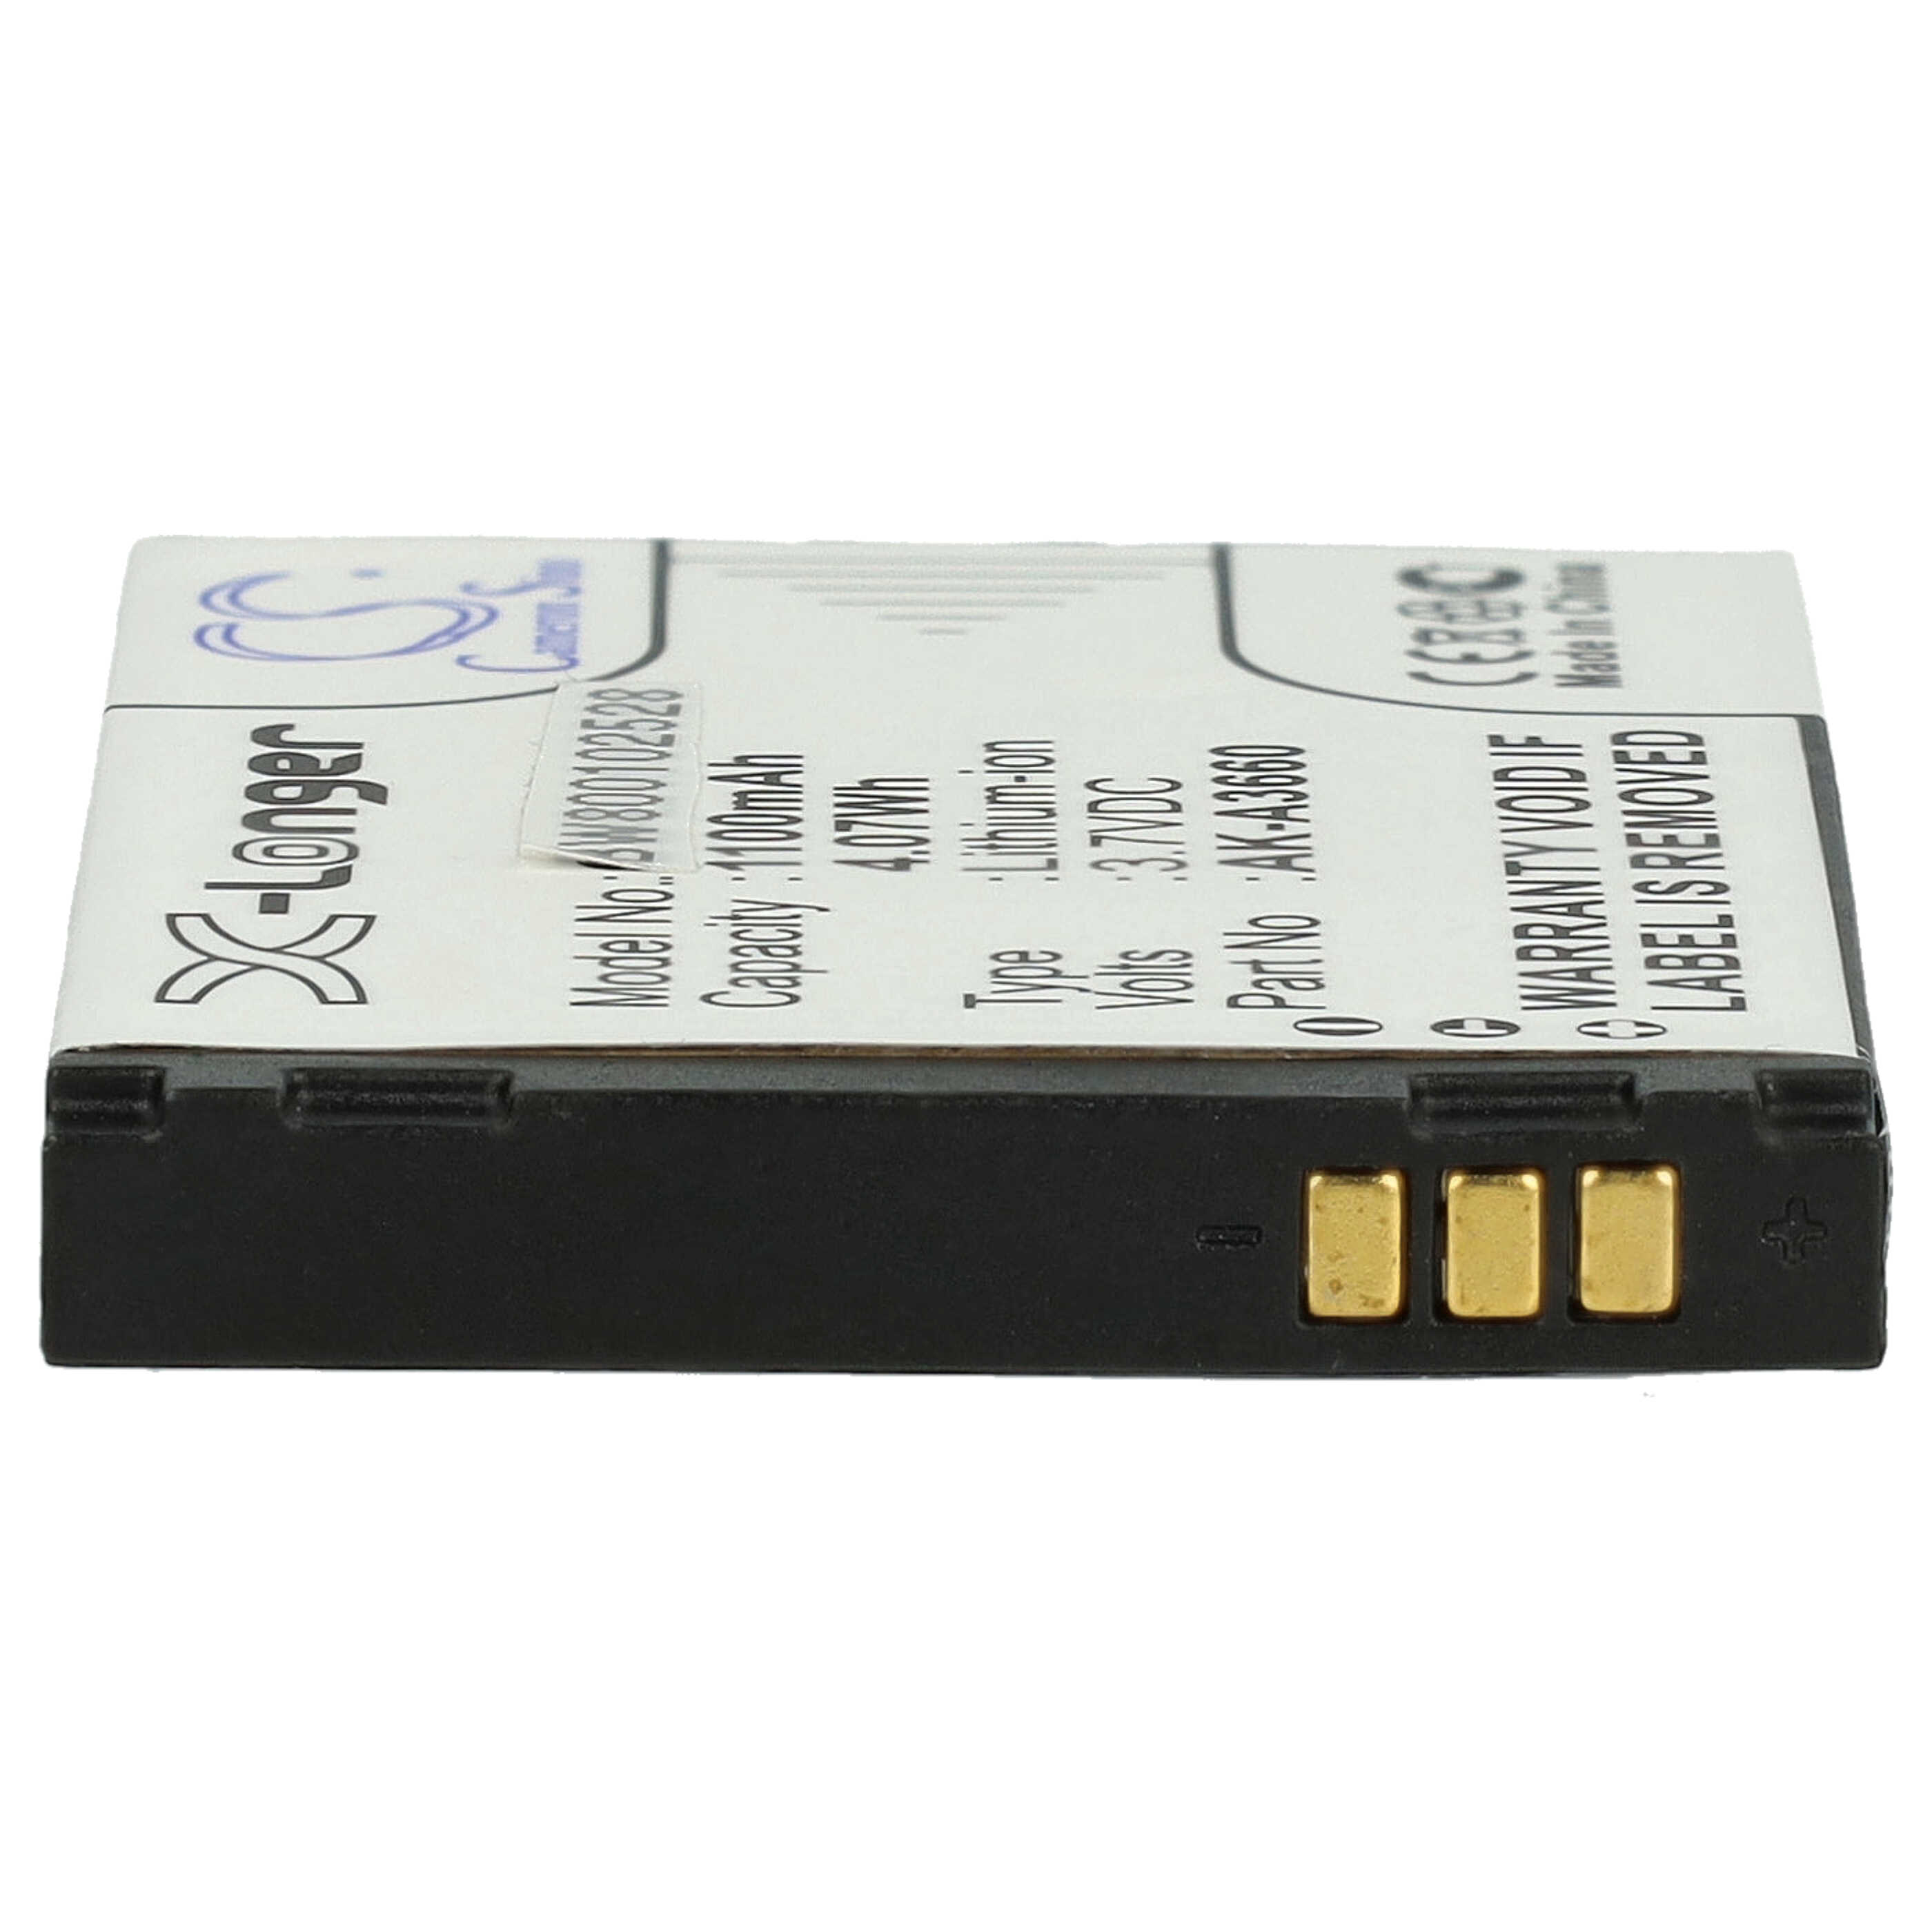 Akumulator bateria do telefonu smartfona zam. Emporia AK-A3630 - 1100mAh, 3,7V, Li-Ion